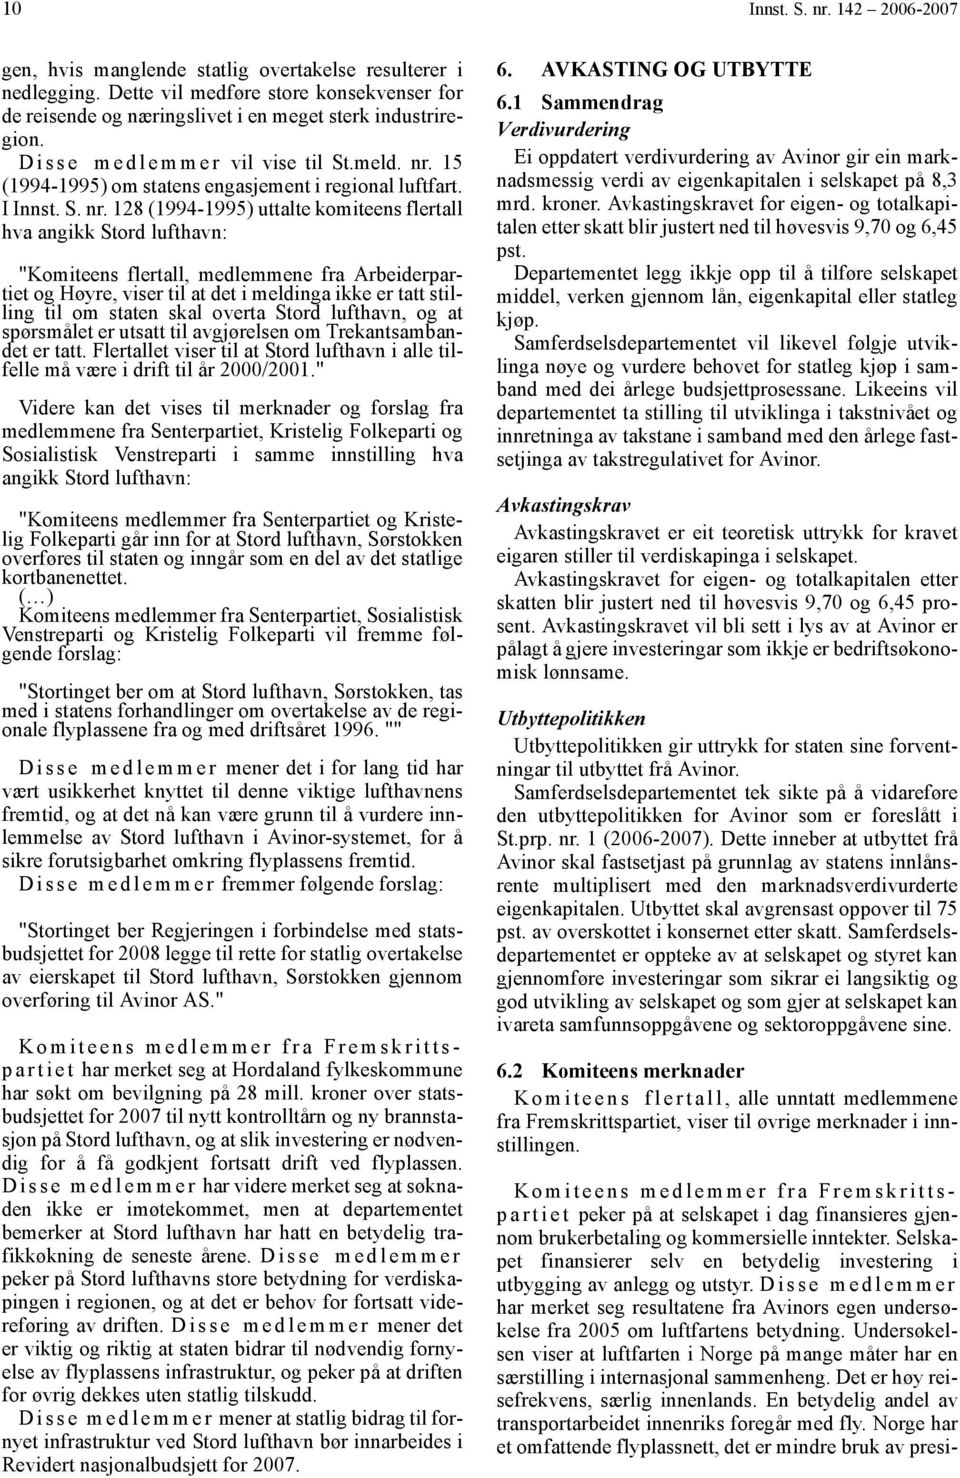 15 (1994-1995) om statens engasjement i regional luftfart. I Innst. S. nr.